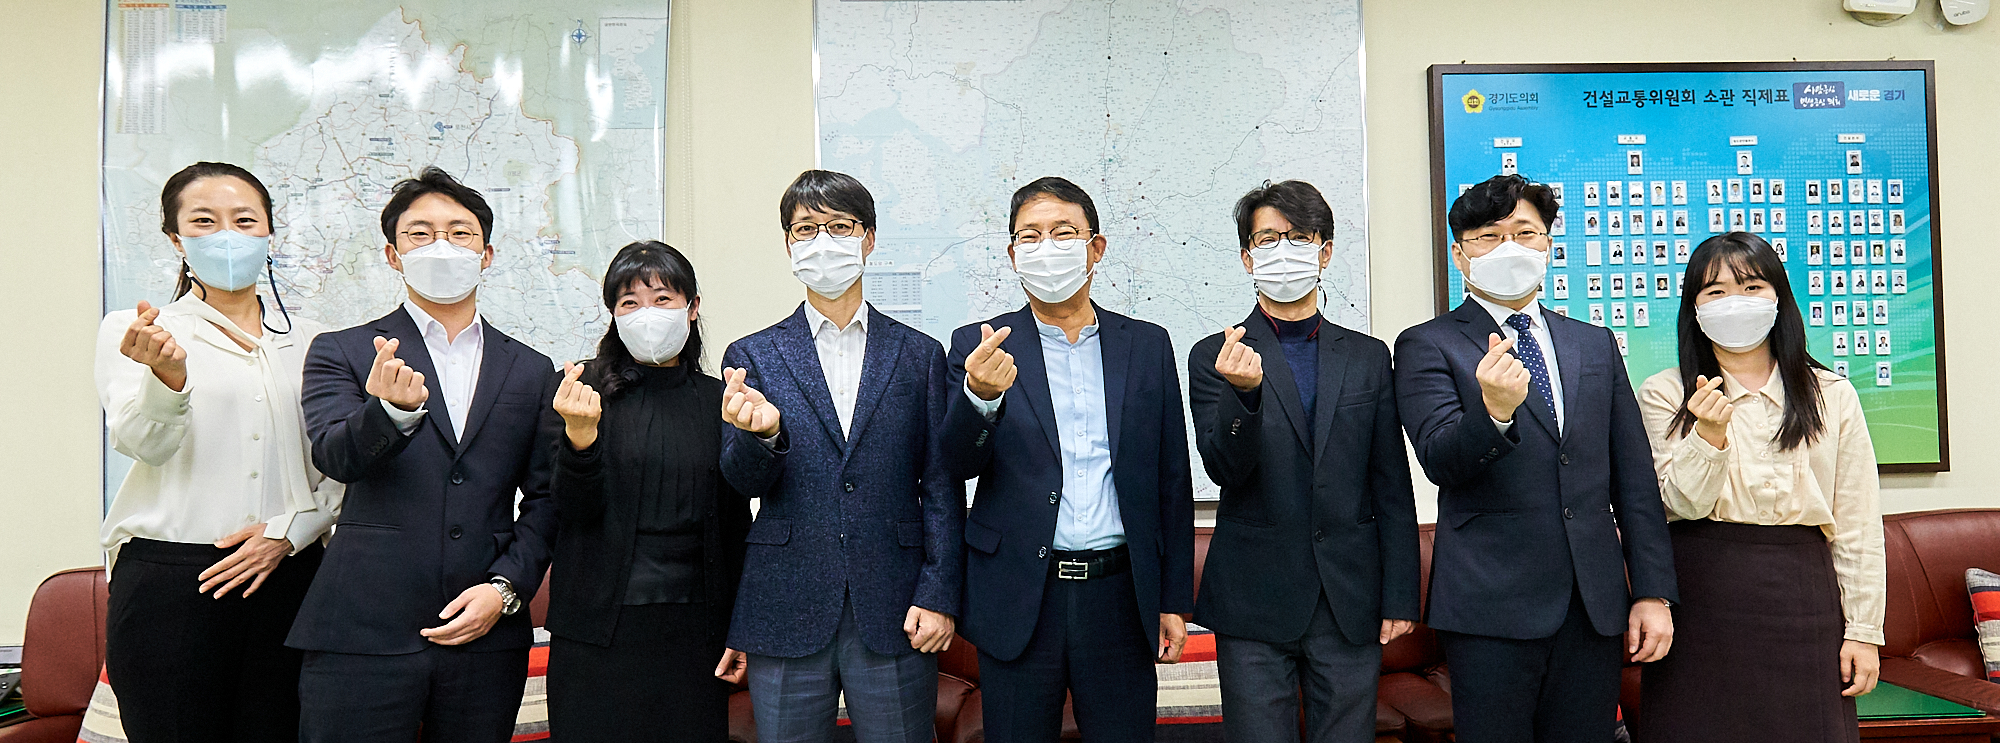 김양수 수석전문위원(왼쪽에서 5번째)을 비롯하여 경기도의회 건설교통 전문위원실 직원들이 포즈를 취하고 있다. 